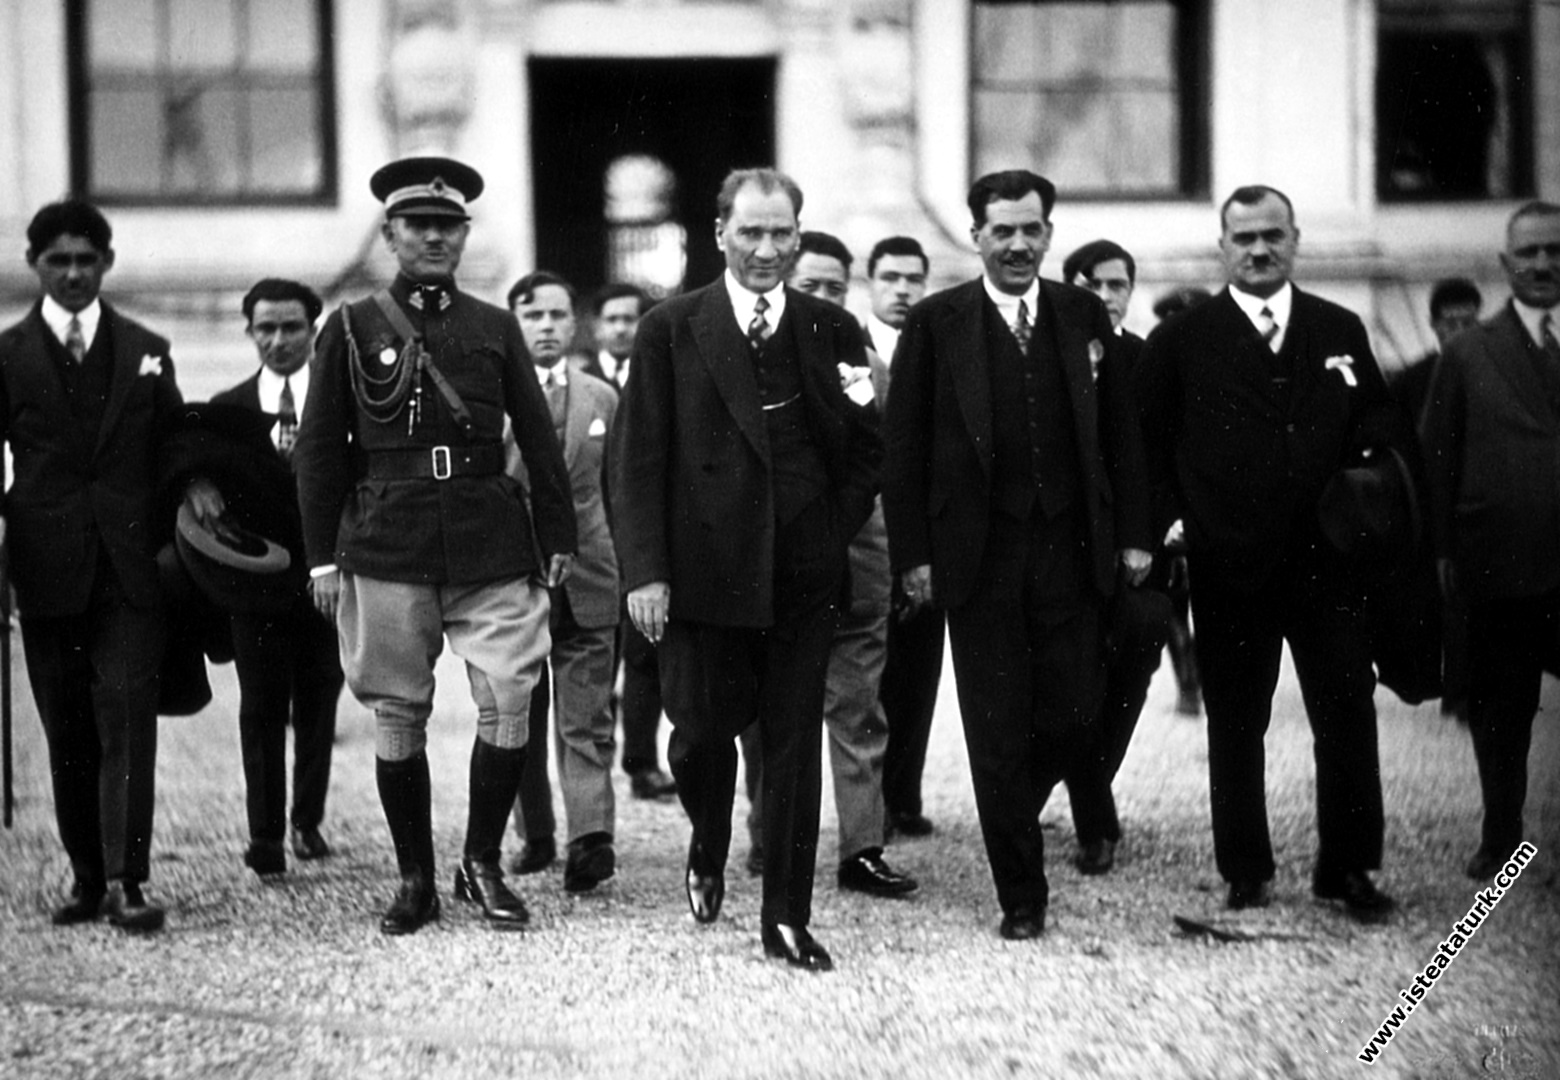 Şehir gezisi yapmak üzere Dolmabahçe Sarayı'ndan ayrılırken. (07.09.1932)